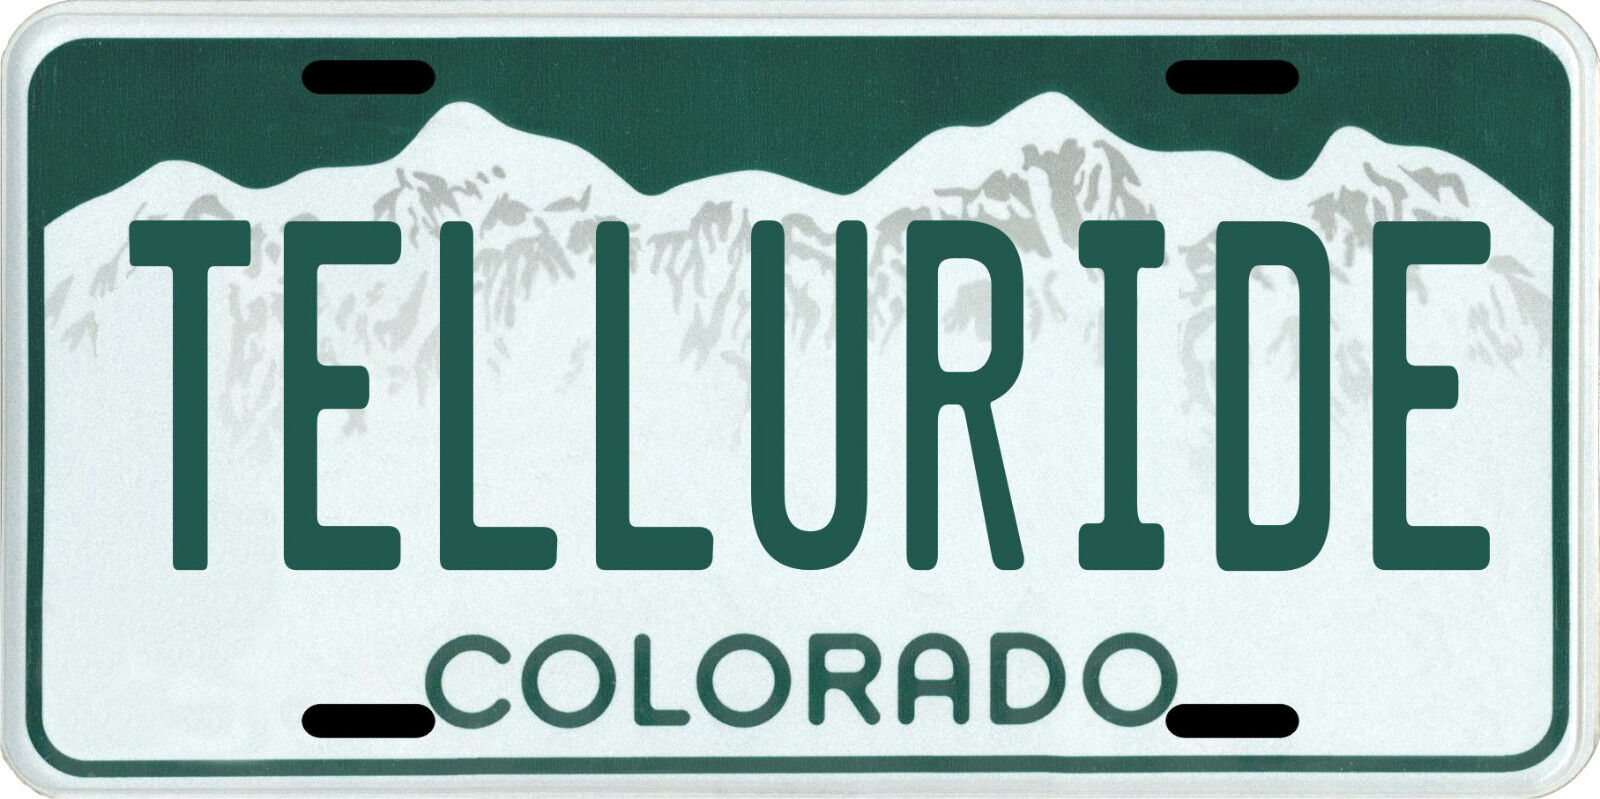 Telluride Colorado Aluminum License Plate